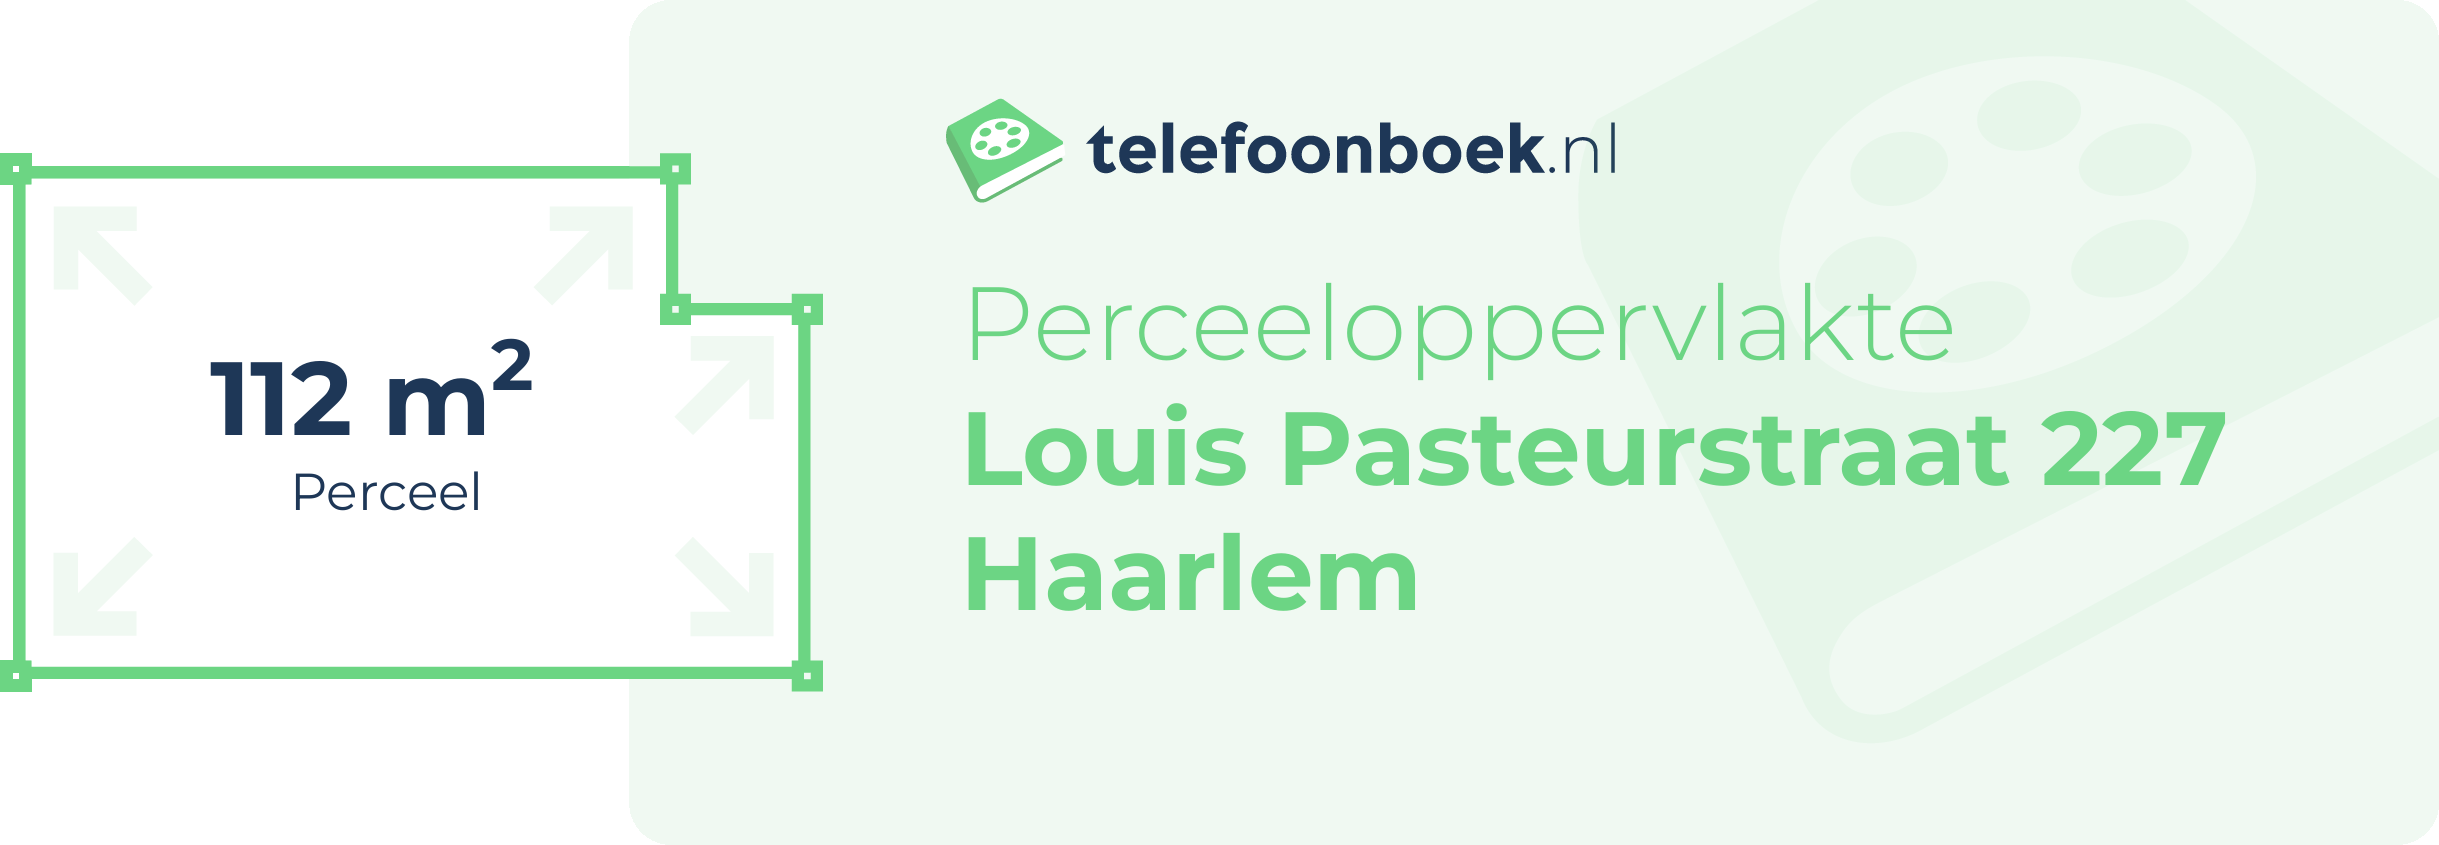 Perceeloppervlakte Louis Pasteurstraat 227 Haarlem